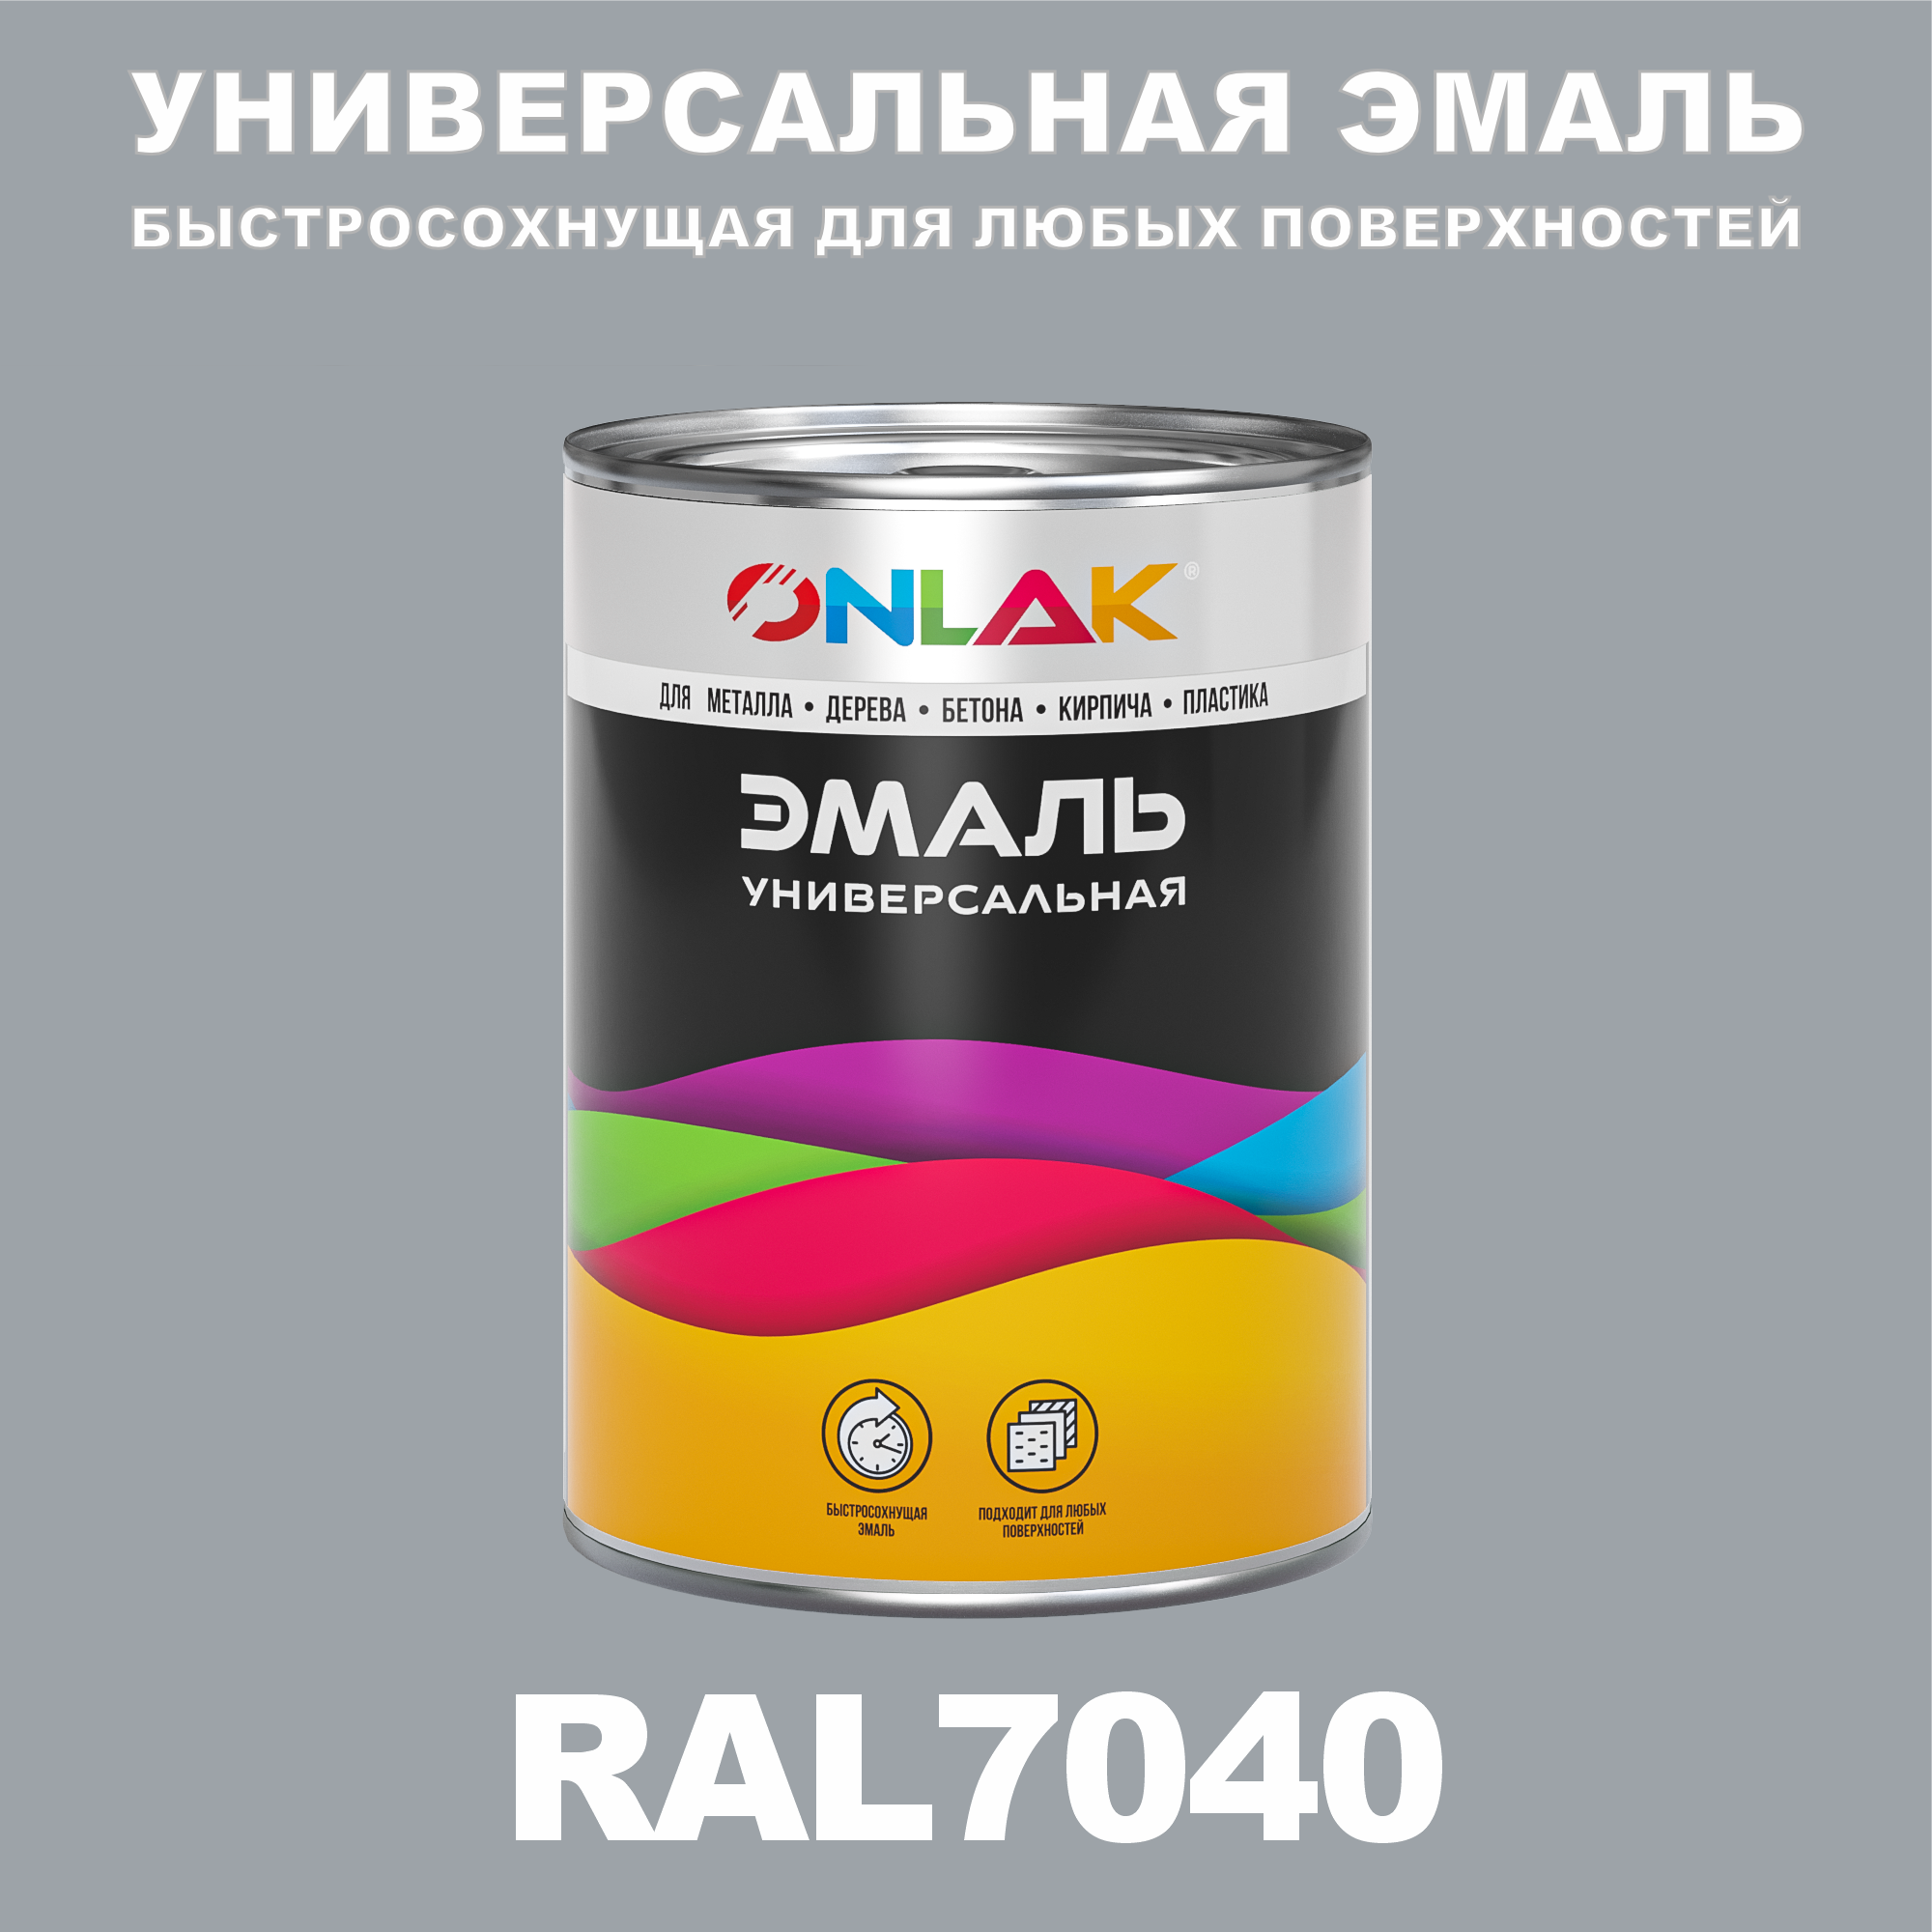 Эмаль ONLAK Универсальная RAL7040 по металлу по ржавчине для дерева бетона пластика универсальная банка mallony